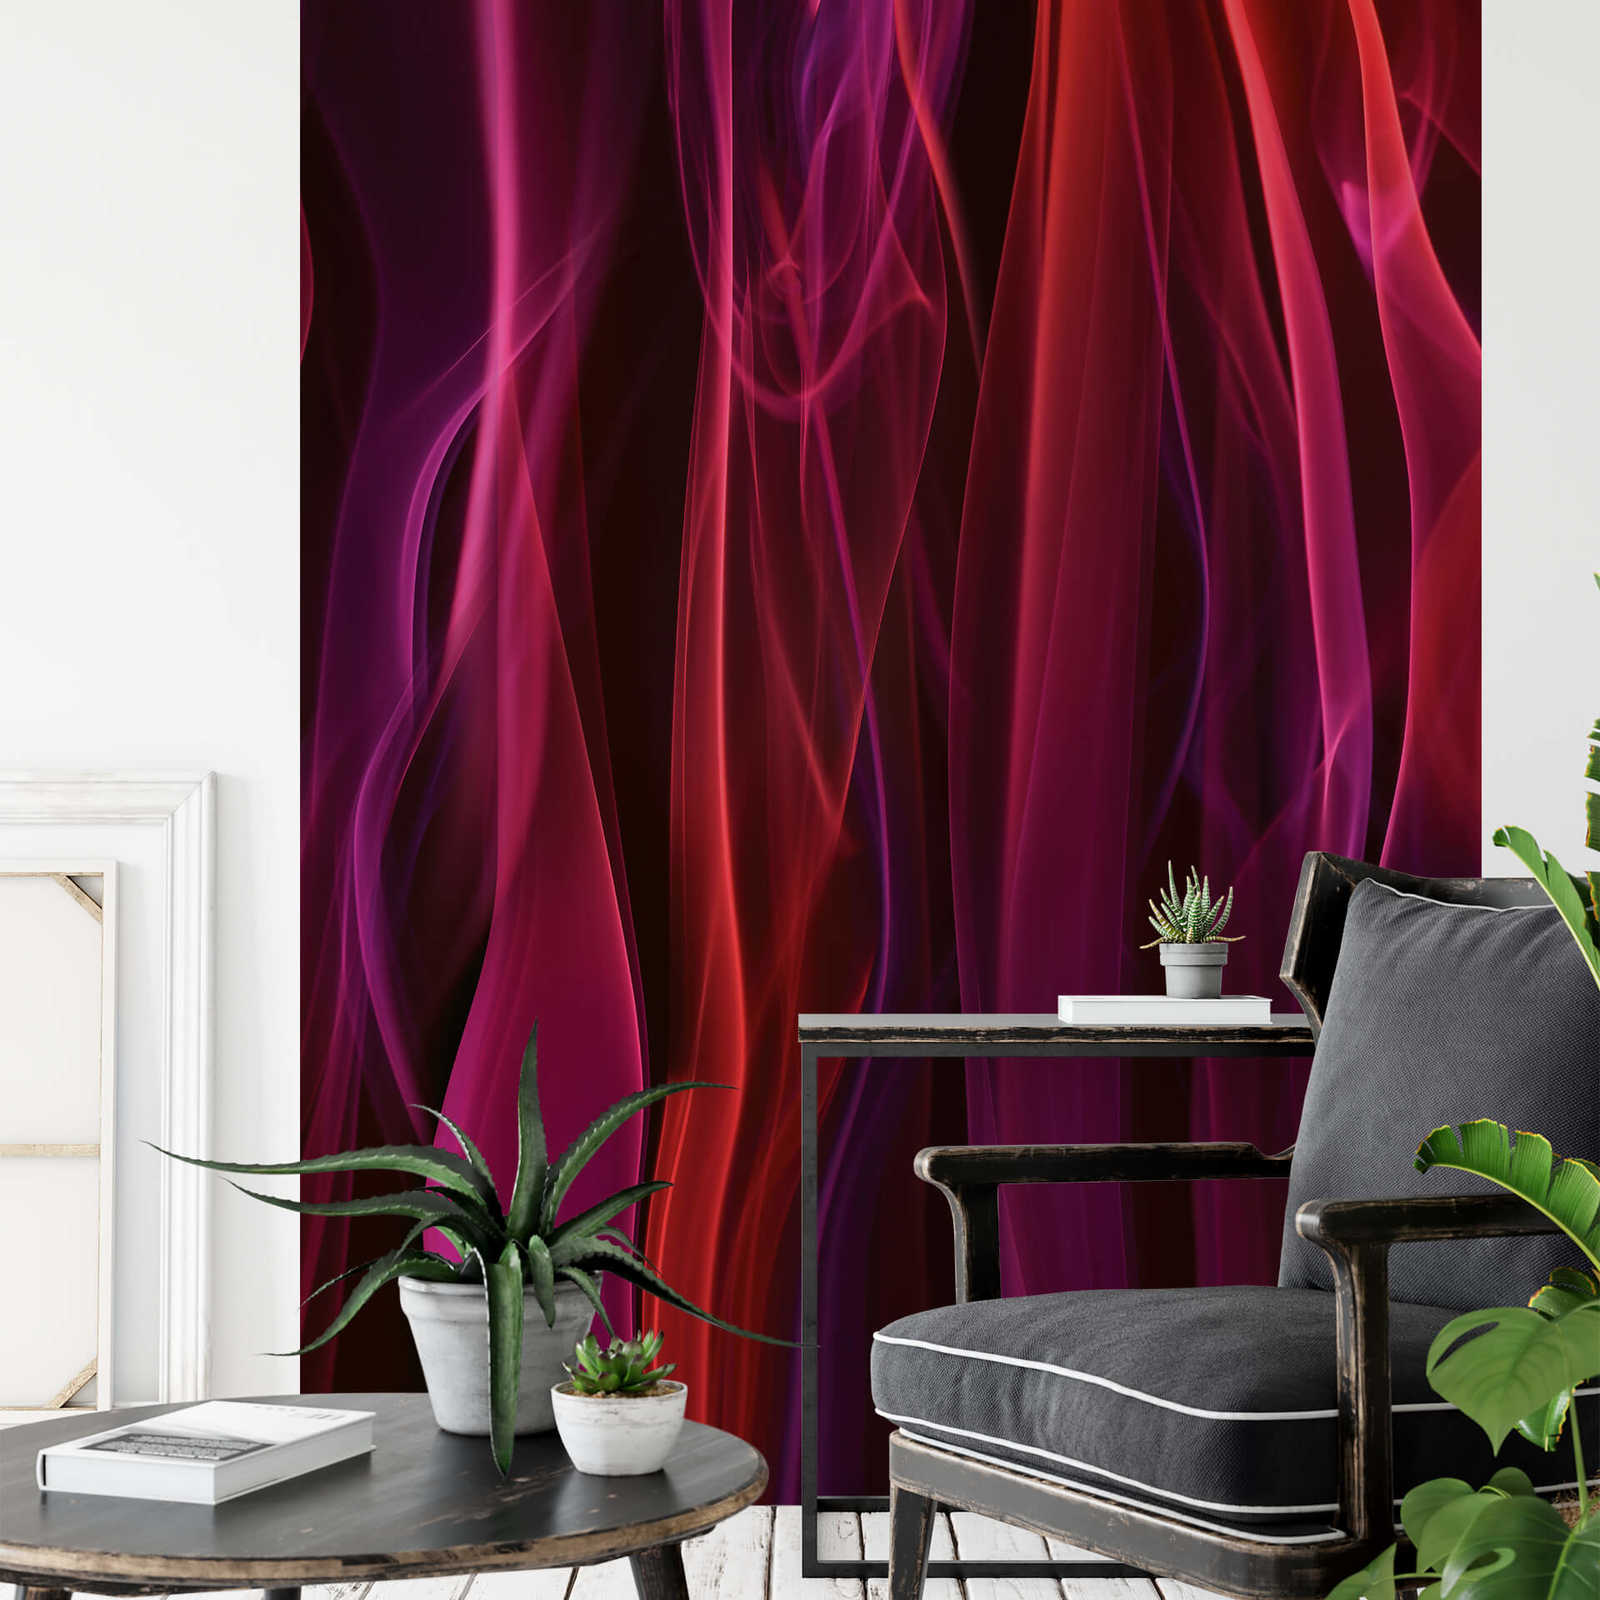             Papier peint panoramique fumée colorée - rouge, violet, noir
        